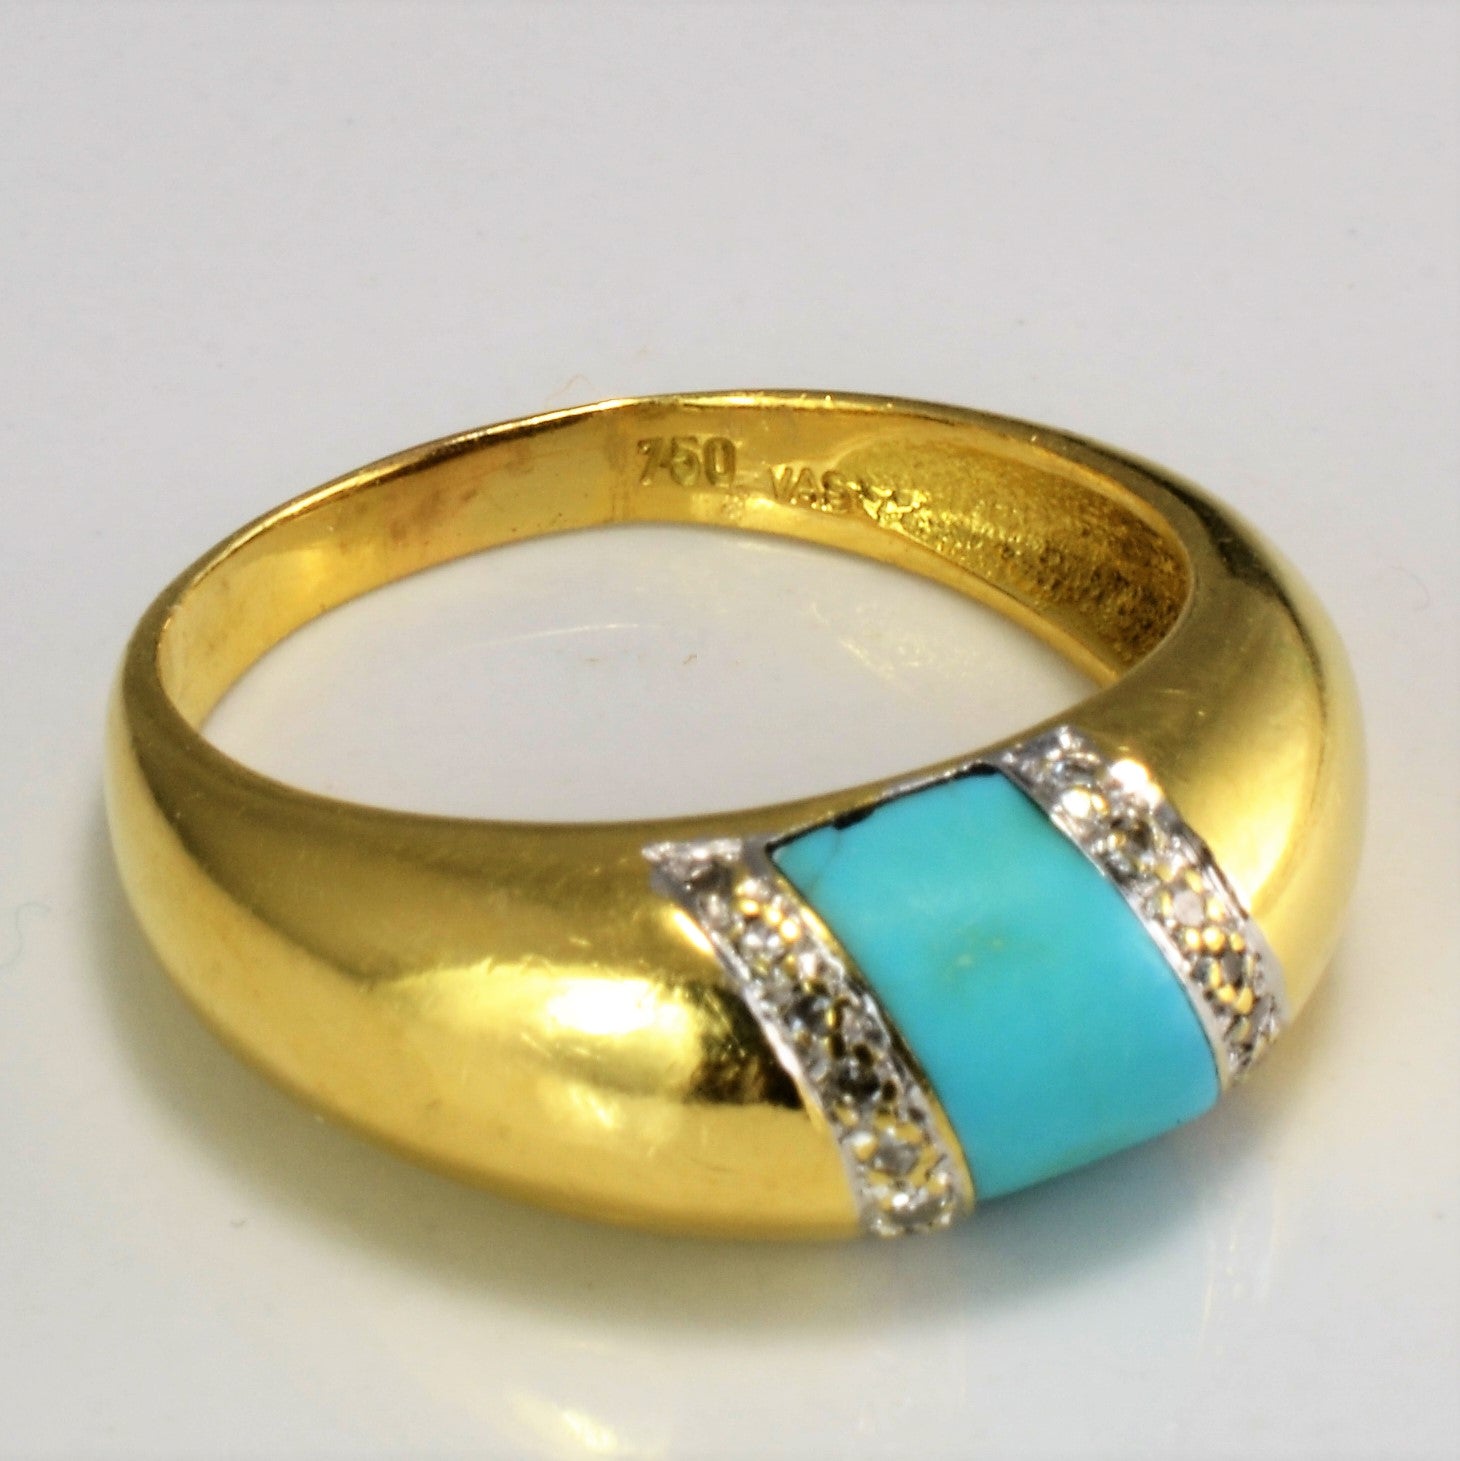 Turquoise & Diamond Ring | 0.12 ctw, SZ 8.75 |